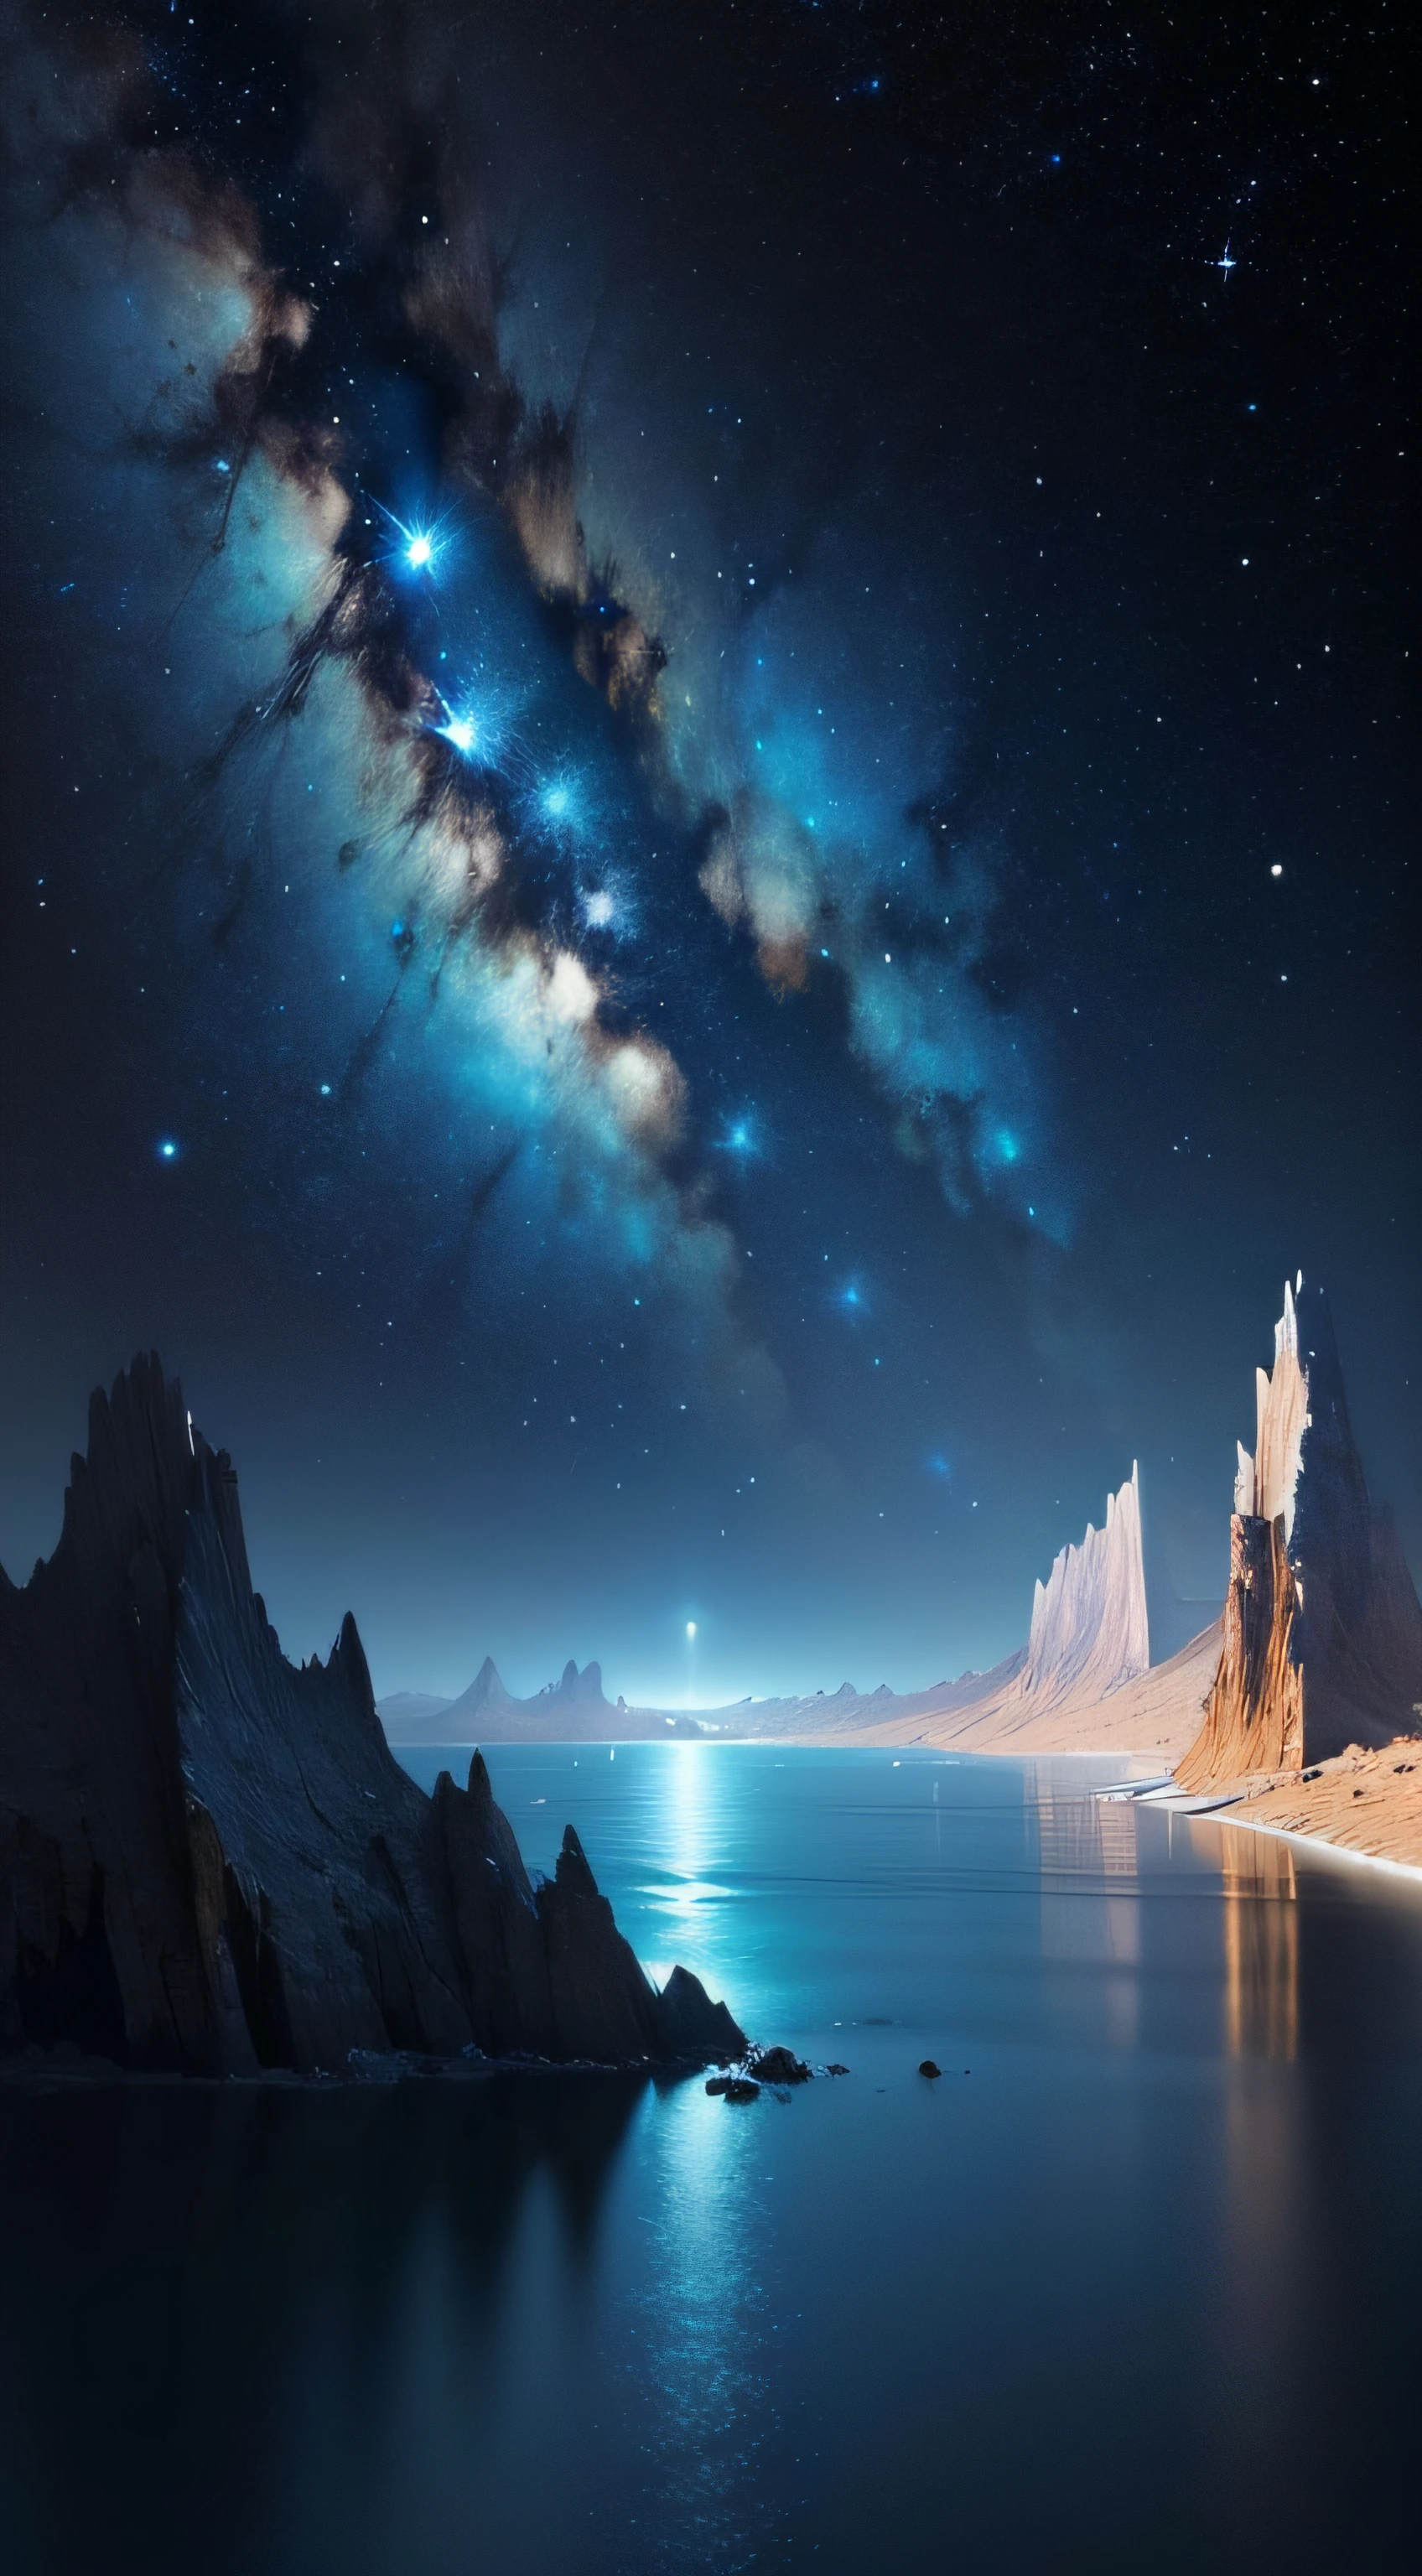 Un mar azul sin fondo，Cielo estrellado con ríos y vías lácteas lejanas., paisaje galáctico, ciencia ficción espacial hermosa épica, cosmos infinito en el fondo, arte digital muy detallado, Paisaje espacial --auto